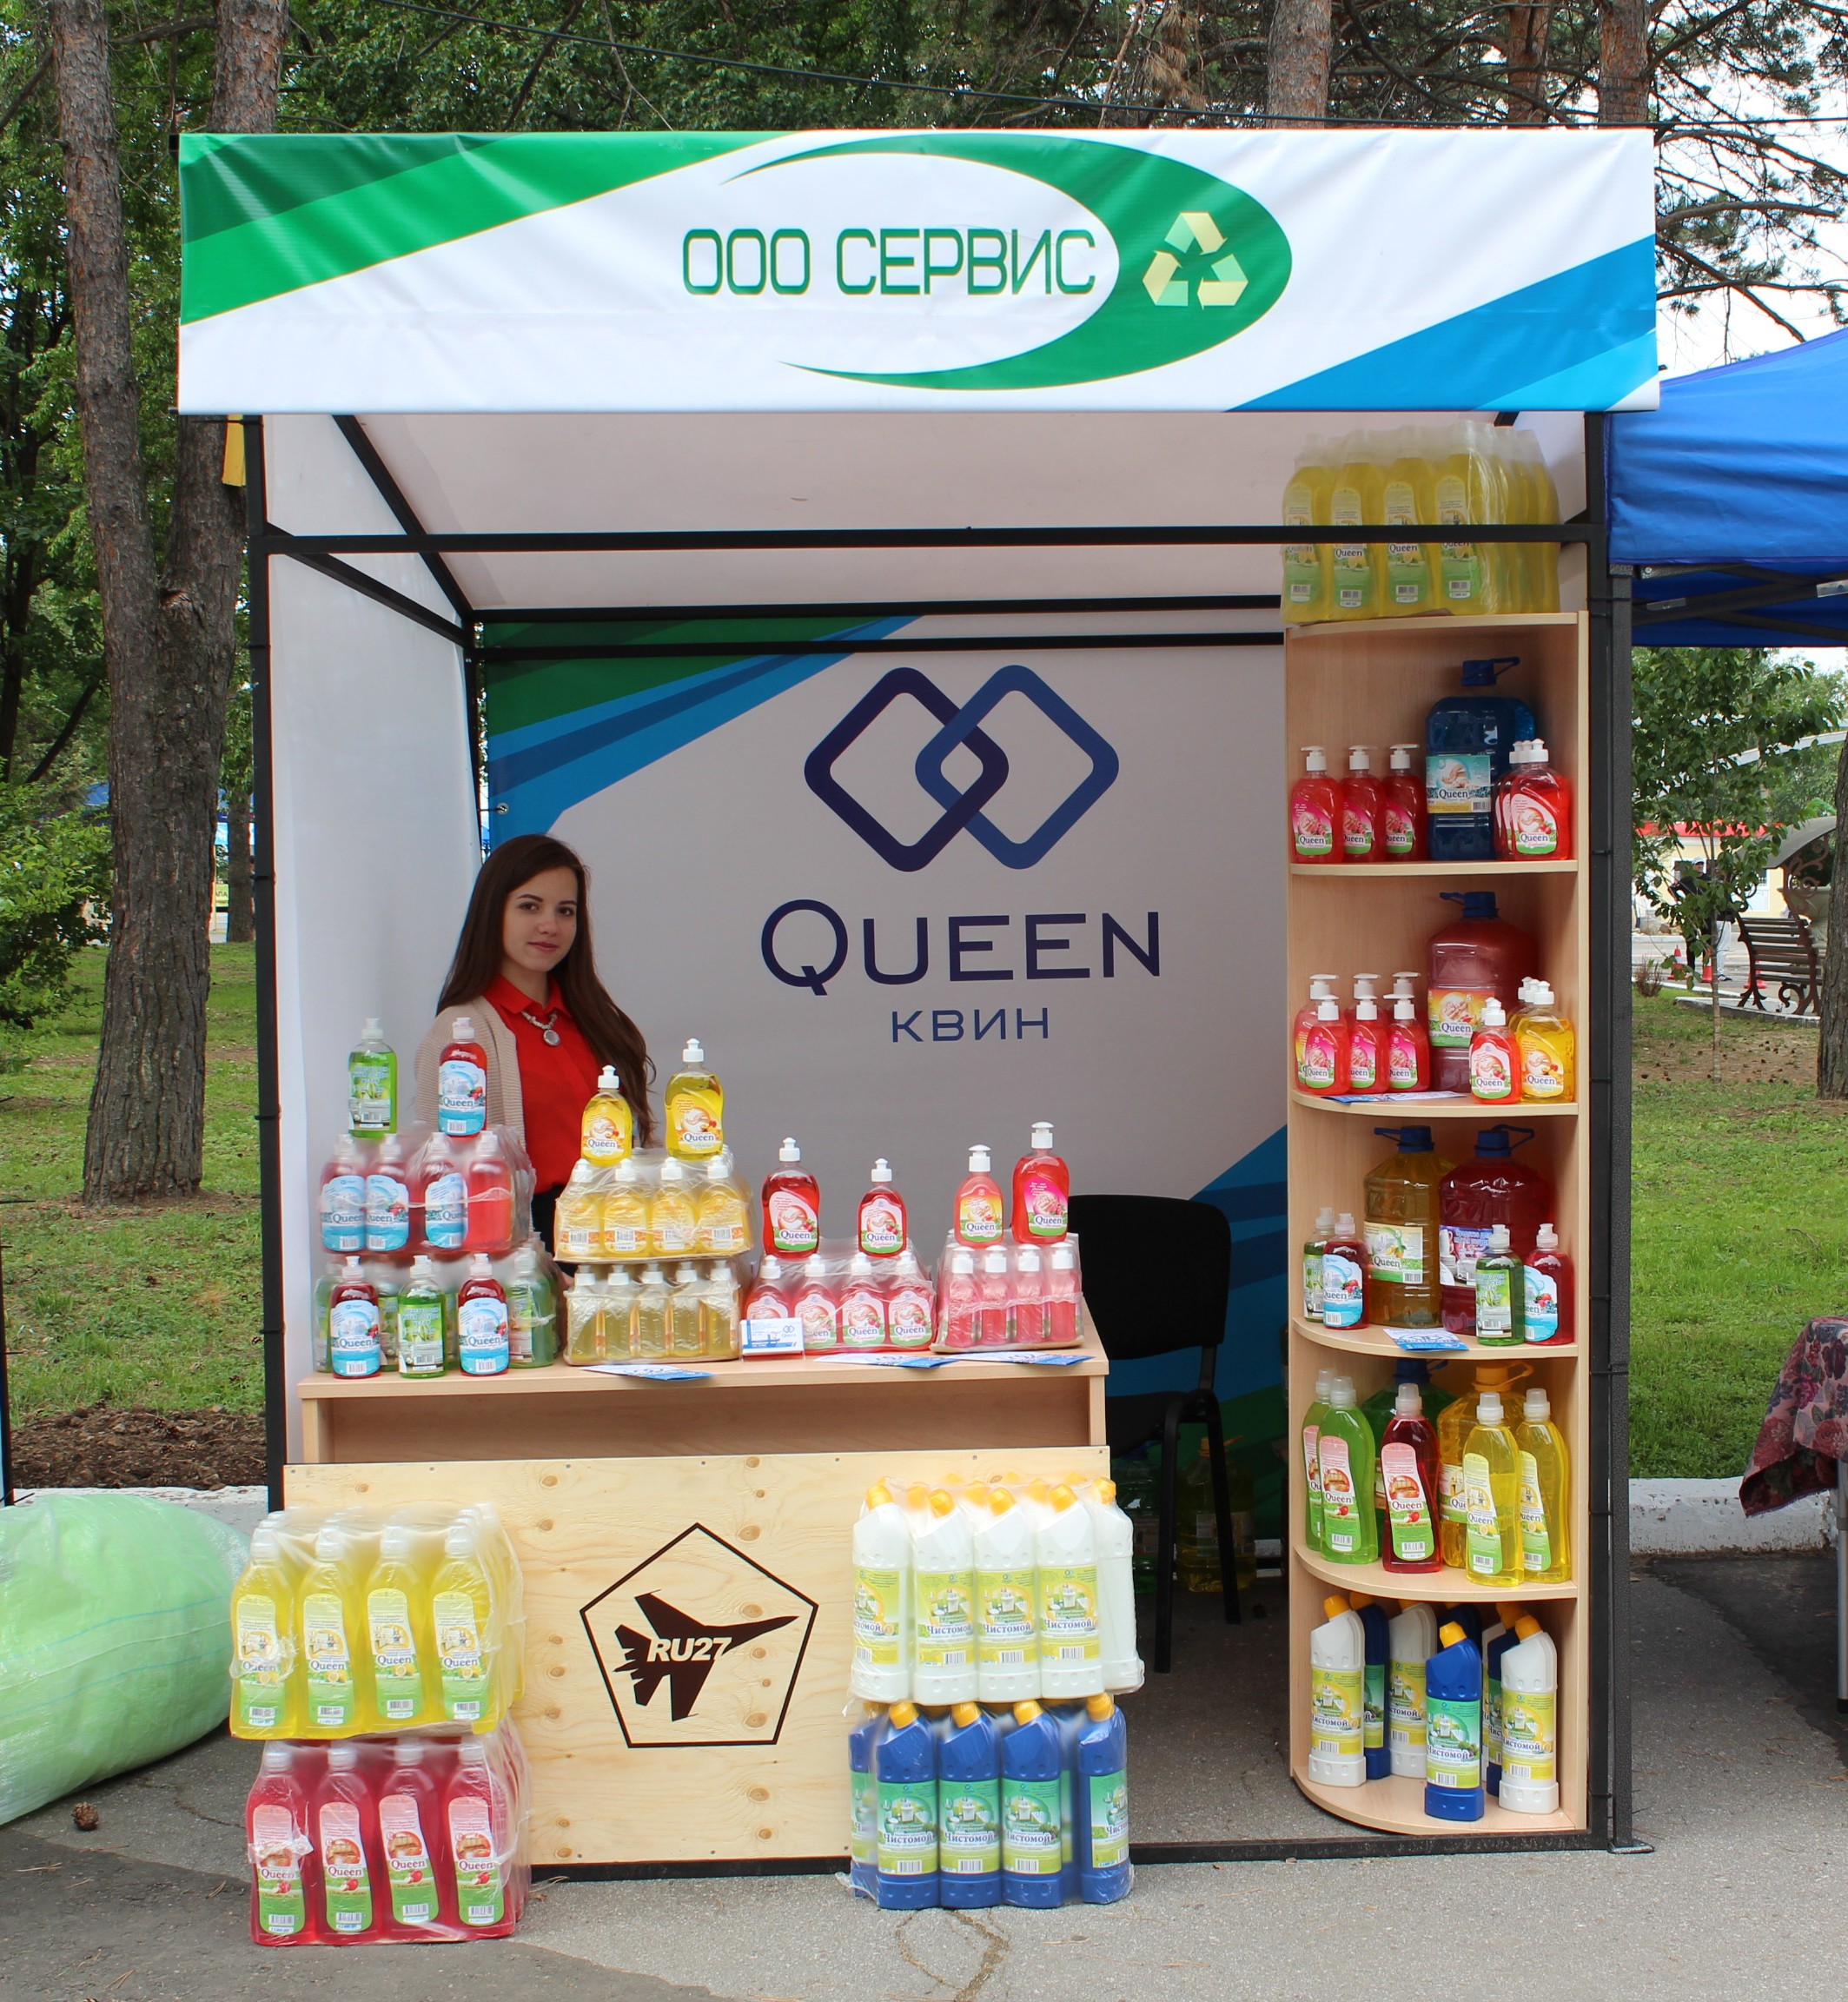 Компания OOO Сервис представила моющую и чистящую продукцию, бытовую химию "Queen" на выставке ярмарке Наш выбор 27